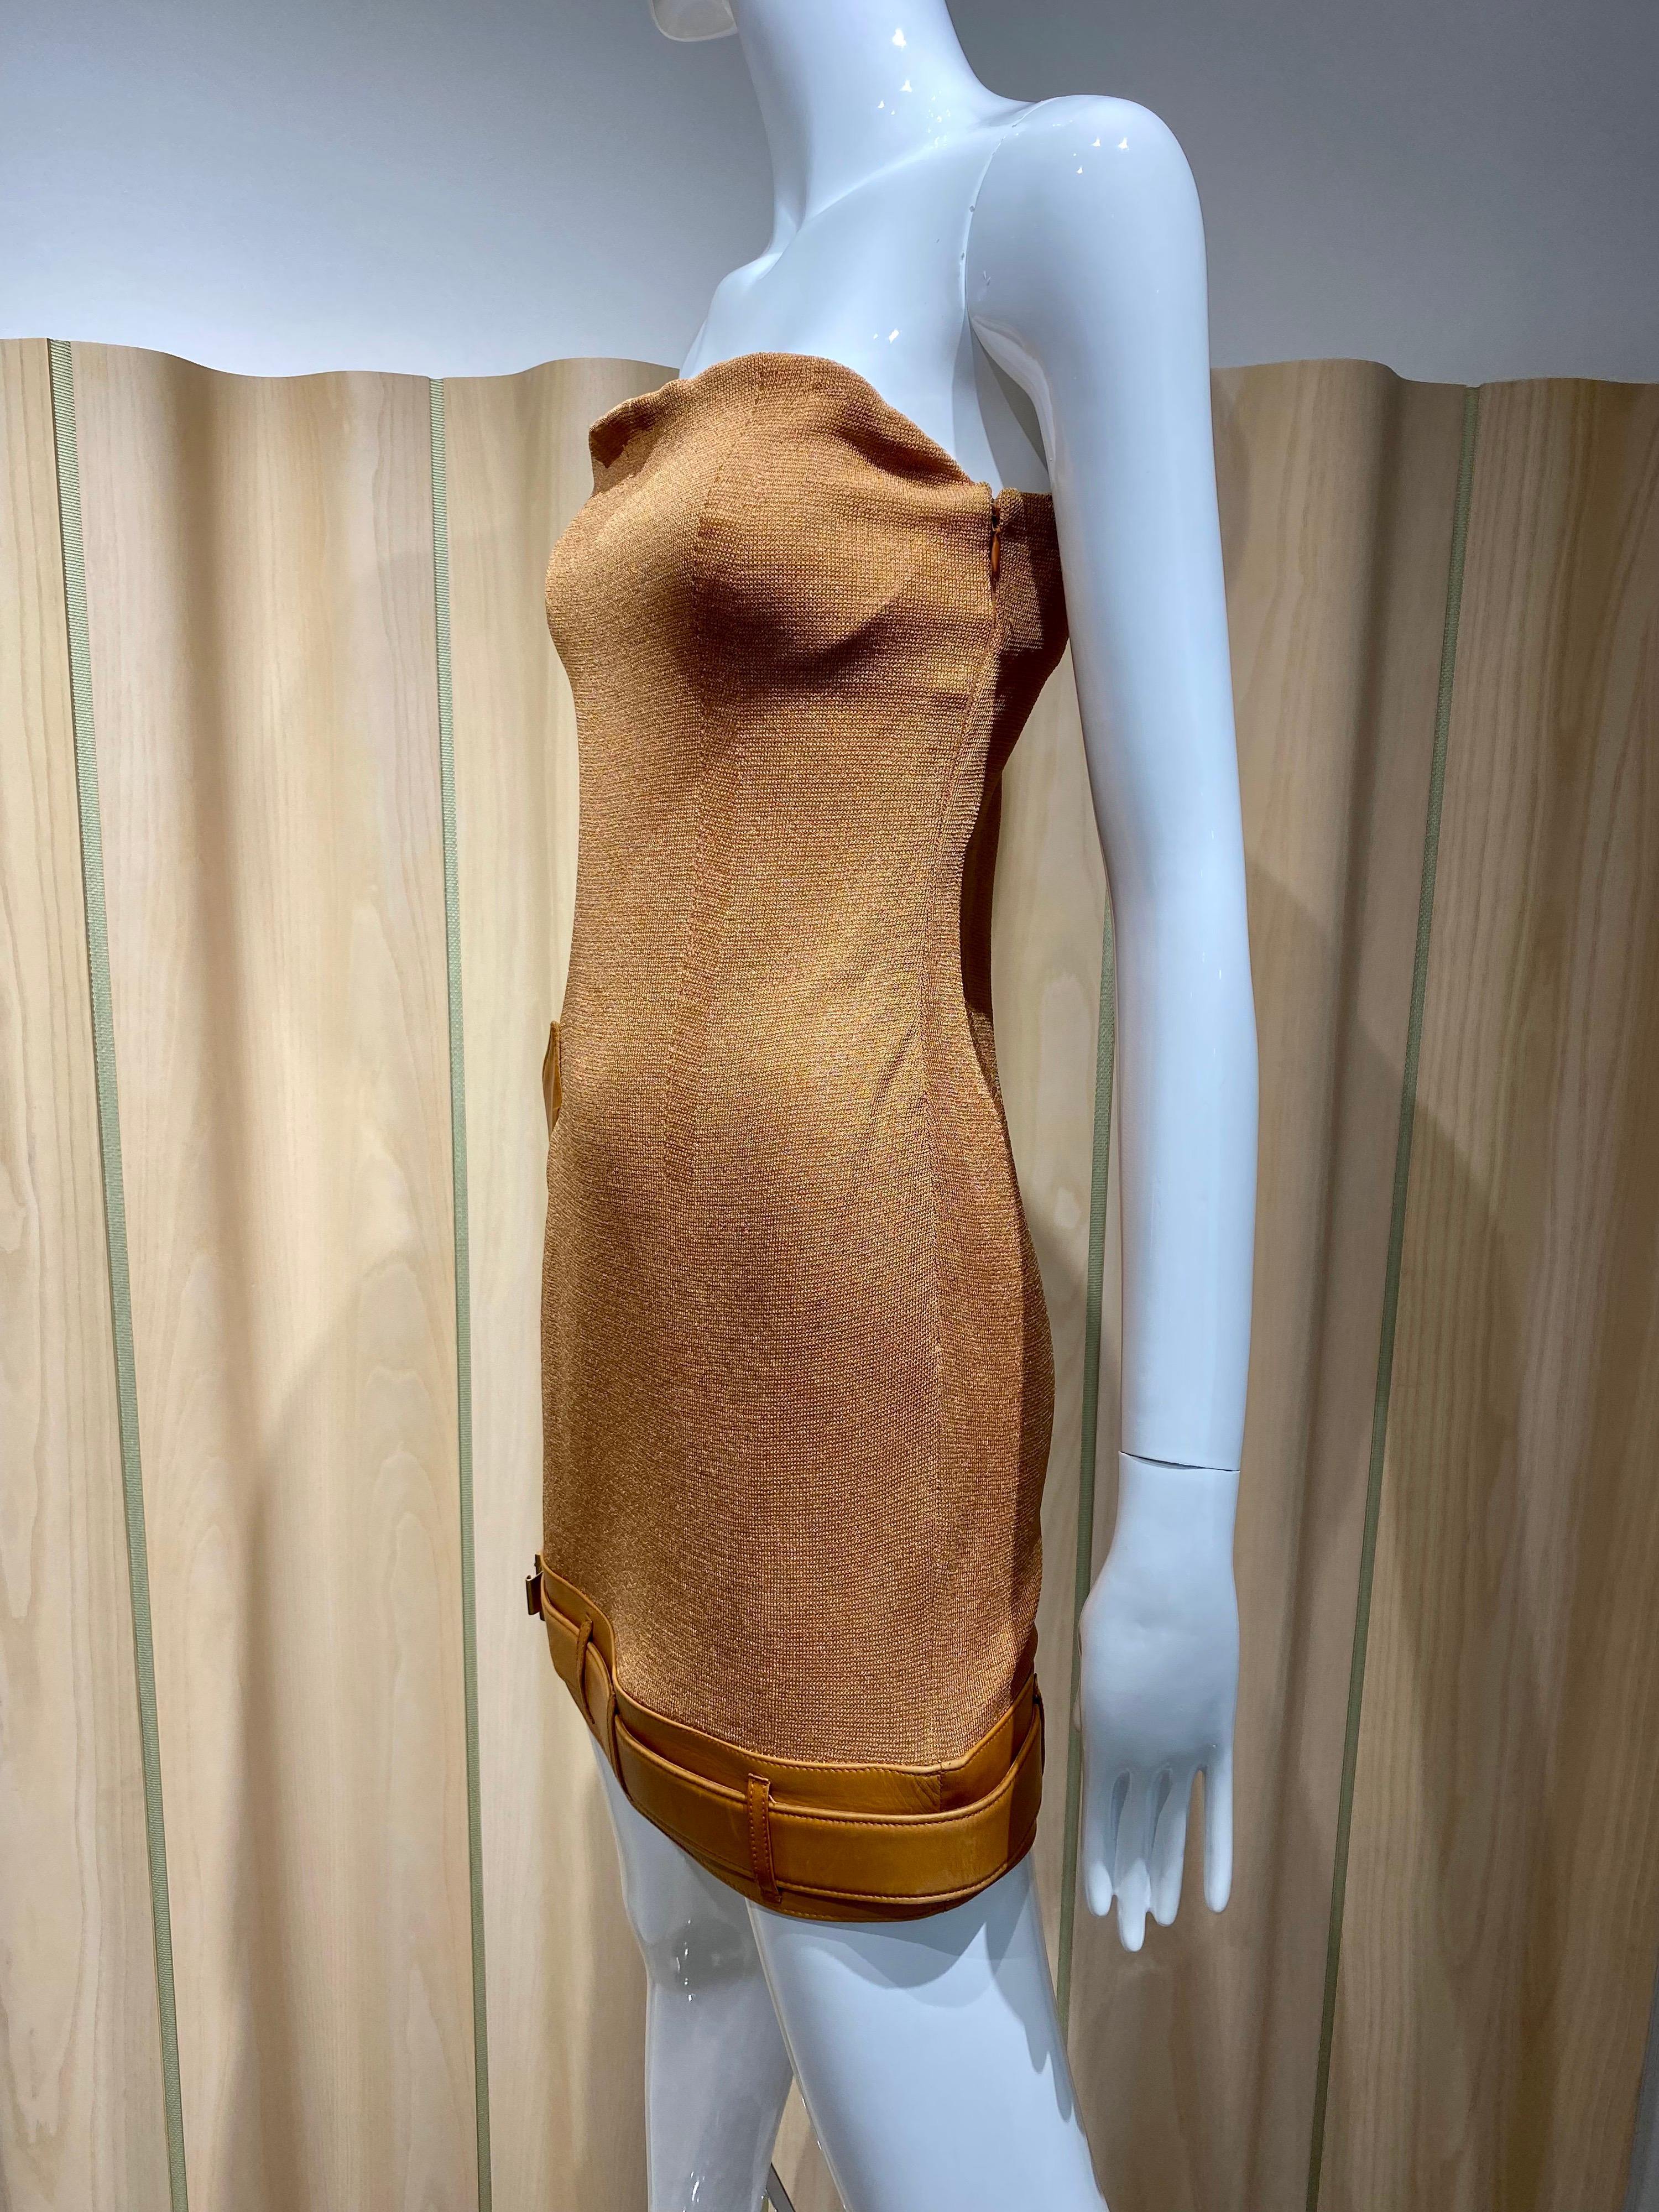 Vintage Gianfranco Ferre Hellbraun gestrickt   trägerloses Minikleid mit Lederbesatz.
Das Kleid hat einen eingebauten BH.  Perfekt für eine Cocktailparty.

Größe : Klein
Büste : 32